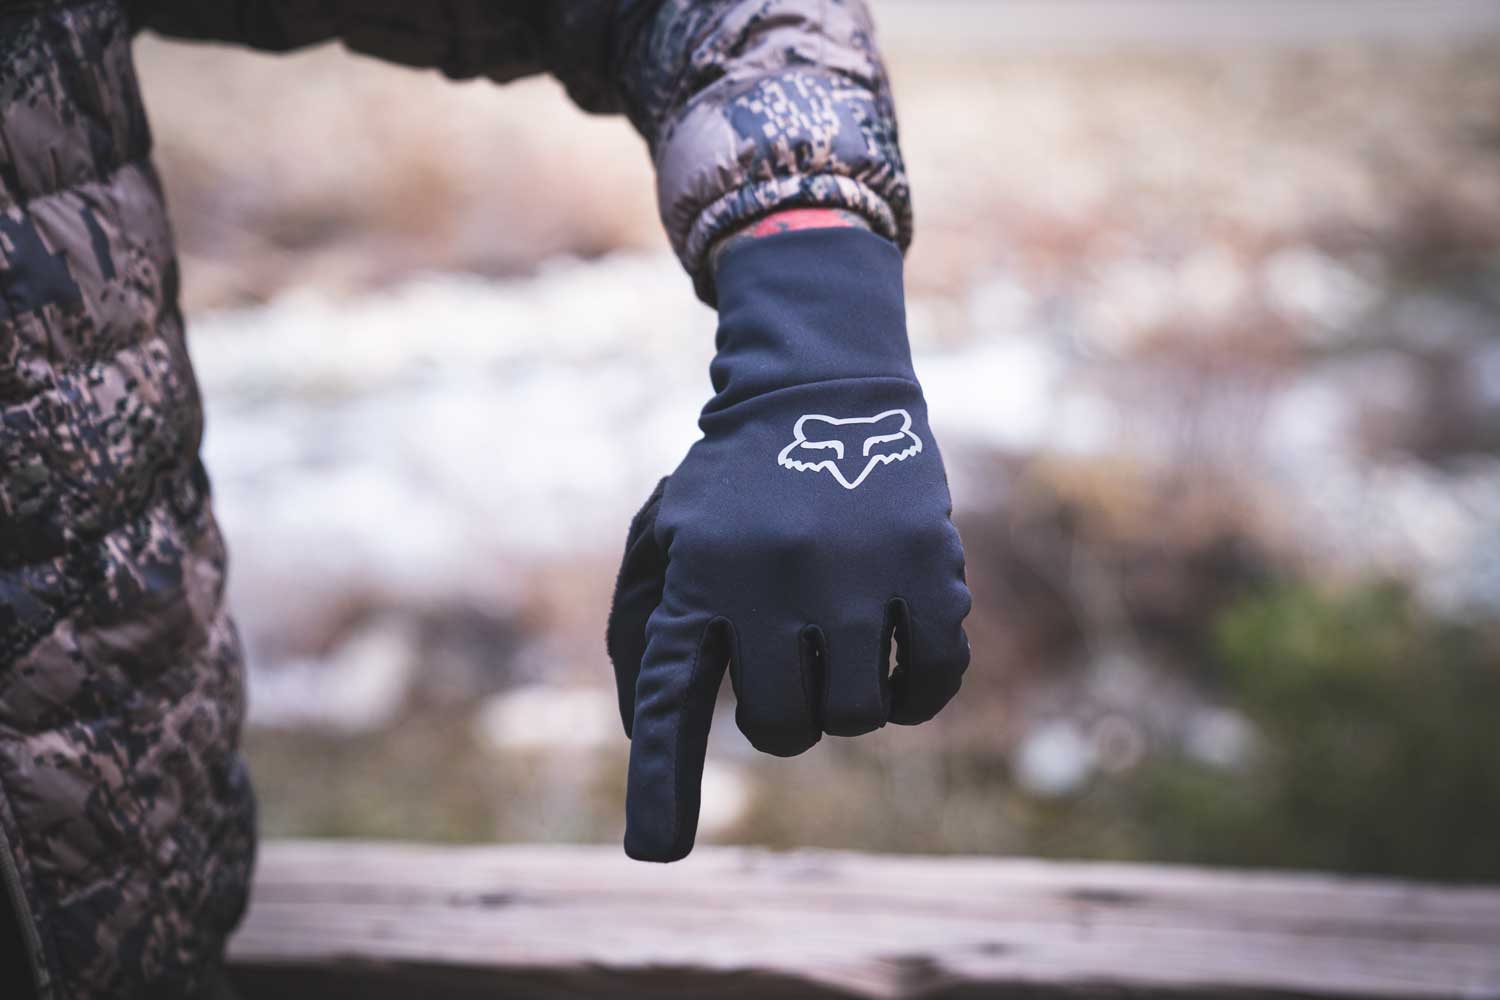 Fox Ranger Fire Glove Review